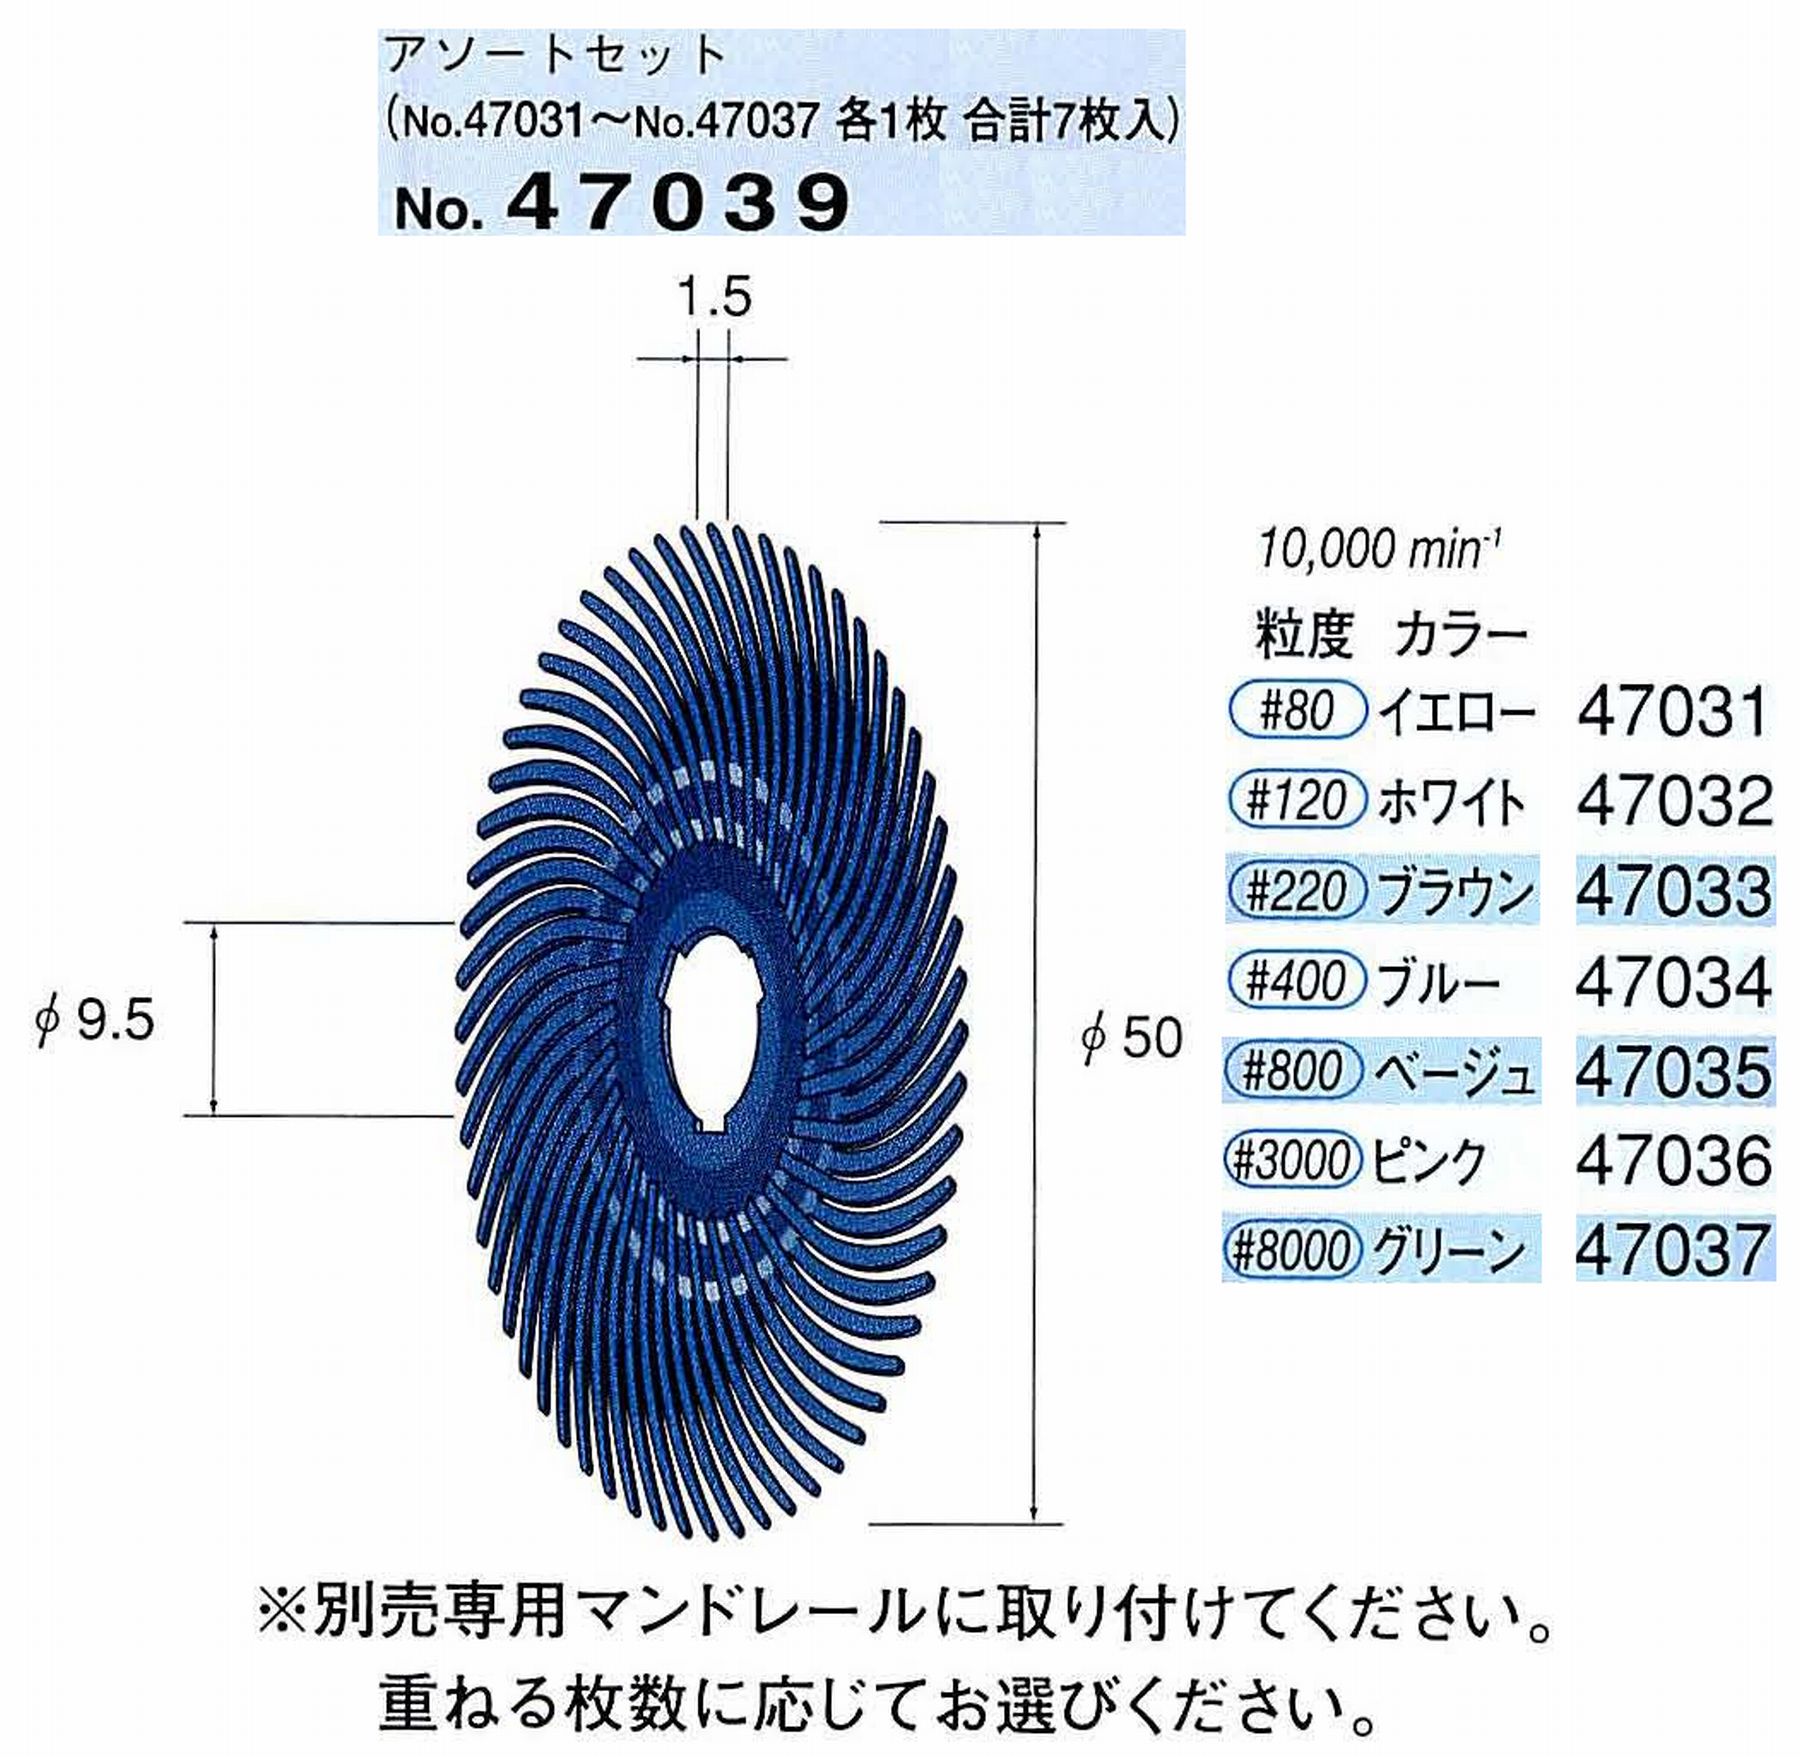 ナカニシ/NAKANISHI フェザーゴム砥石アソートセット 47039